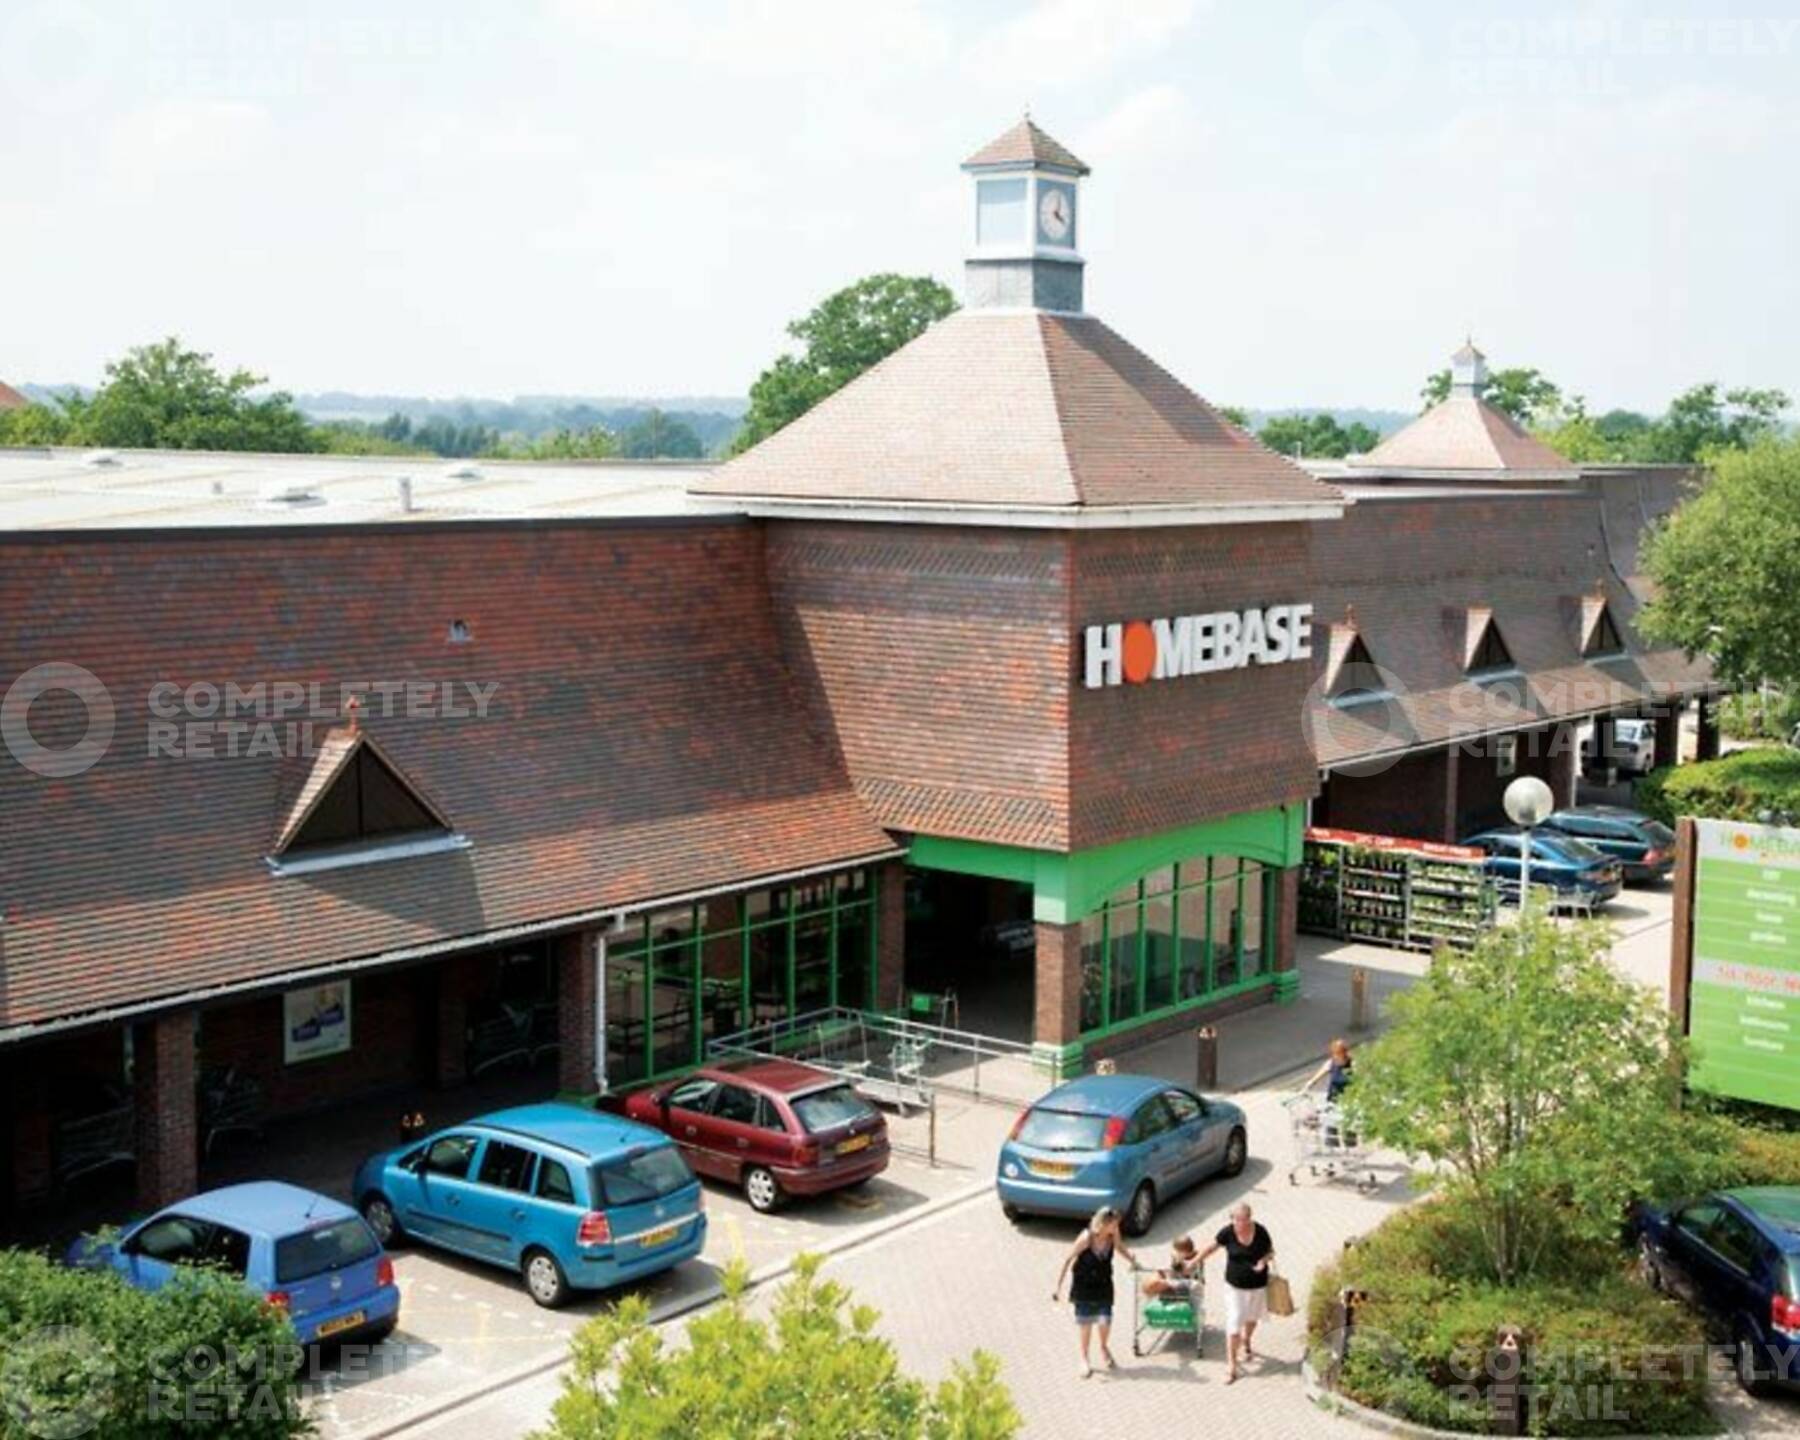 Broadbridge Heath Retail Park